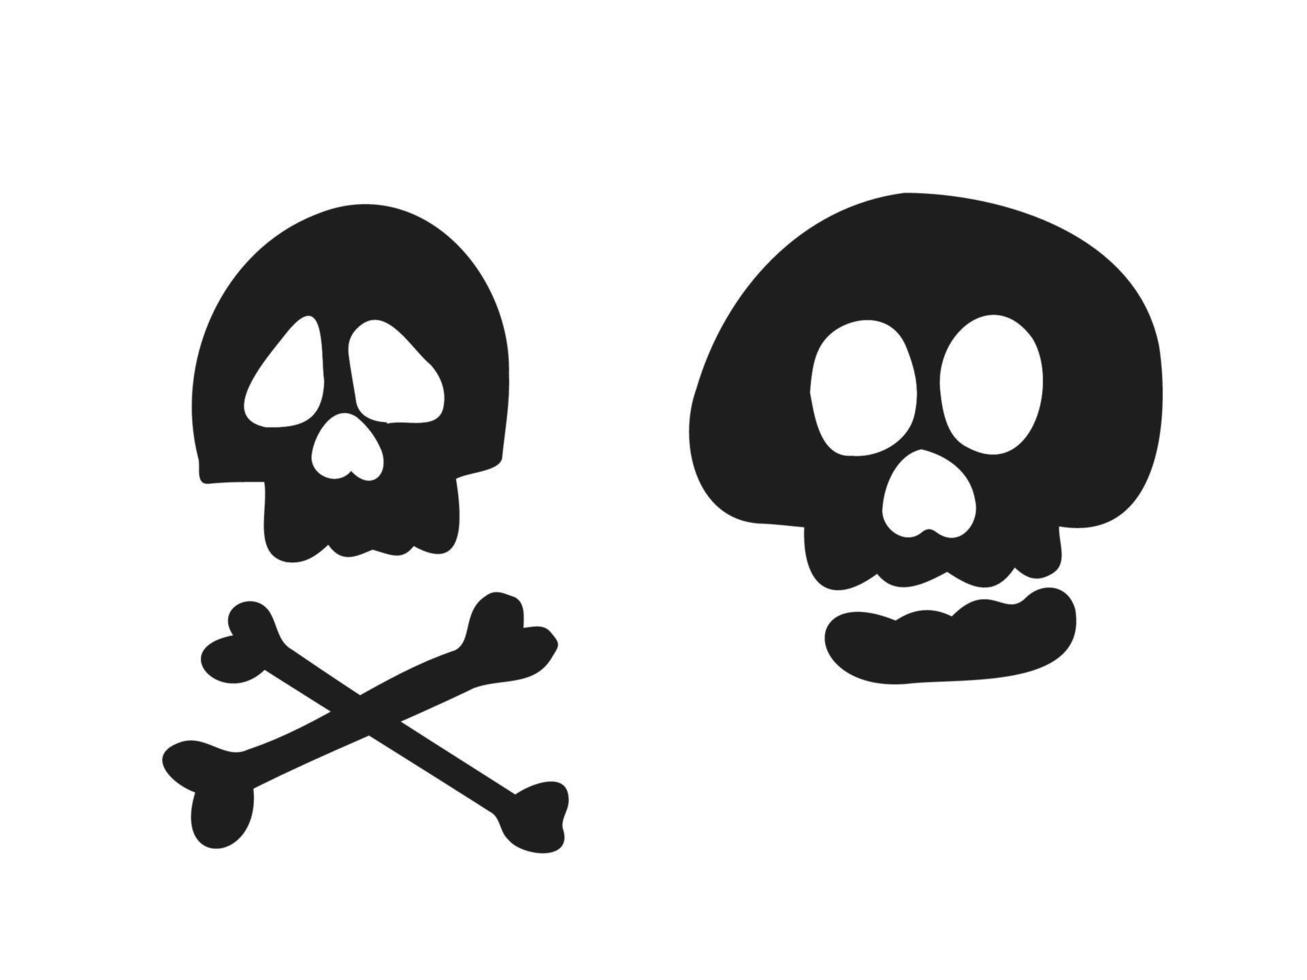 halloween 2022 - 31 de octubre. una fiesta tradicional. truco o trato. ilustración vectorial en estilo garabato dibujado a mano. conjunto de siluetas de cráneos humanos. vector